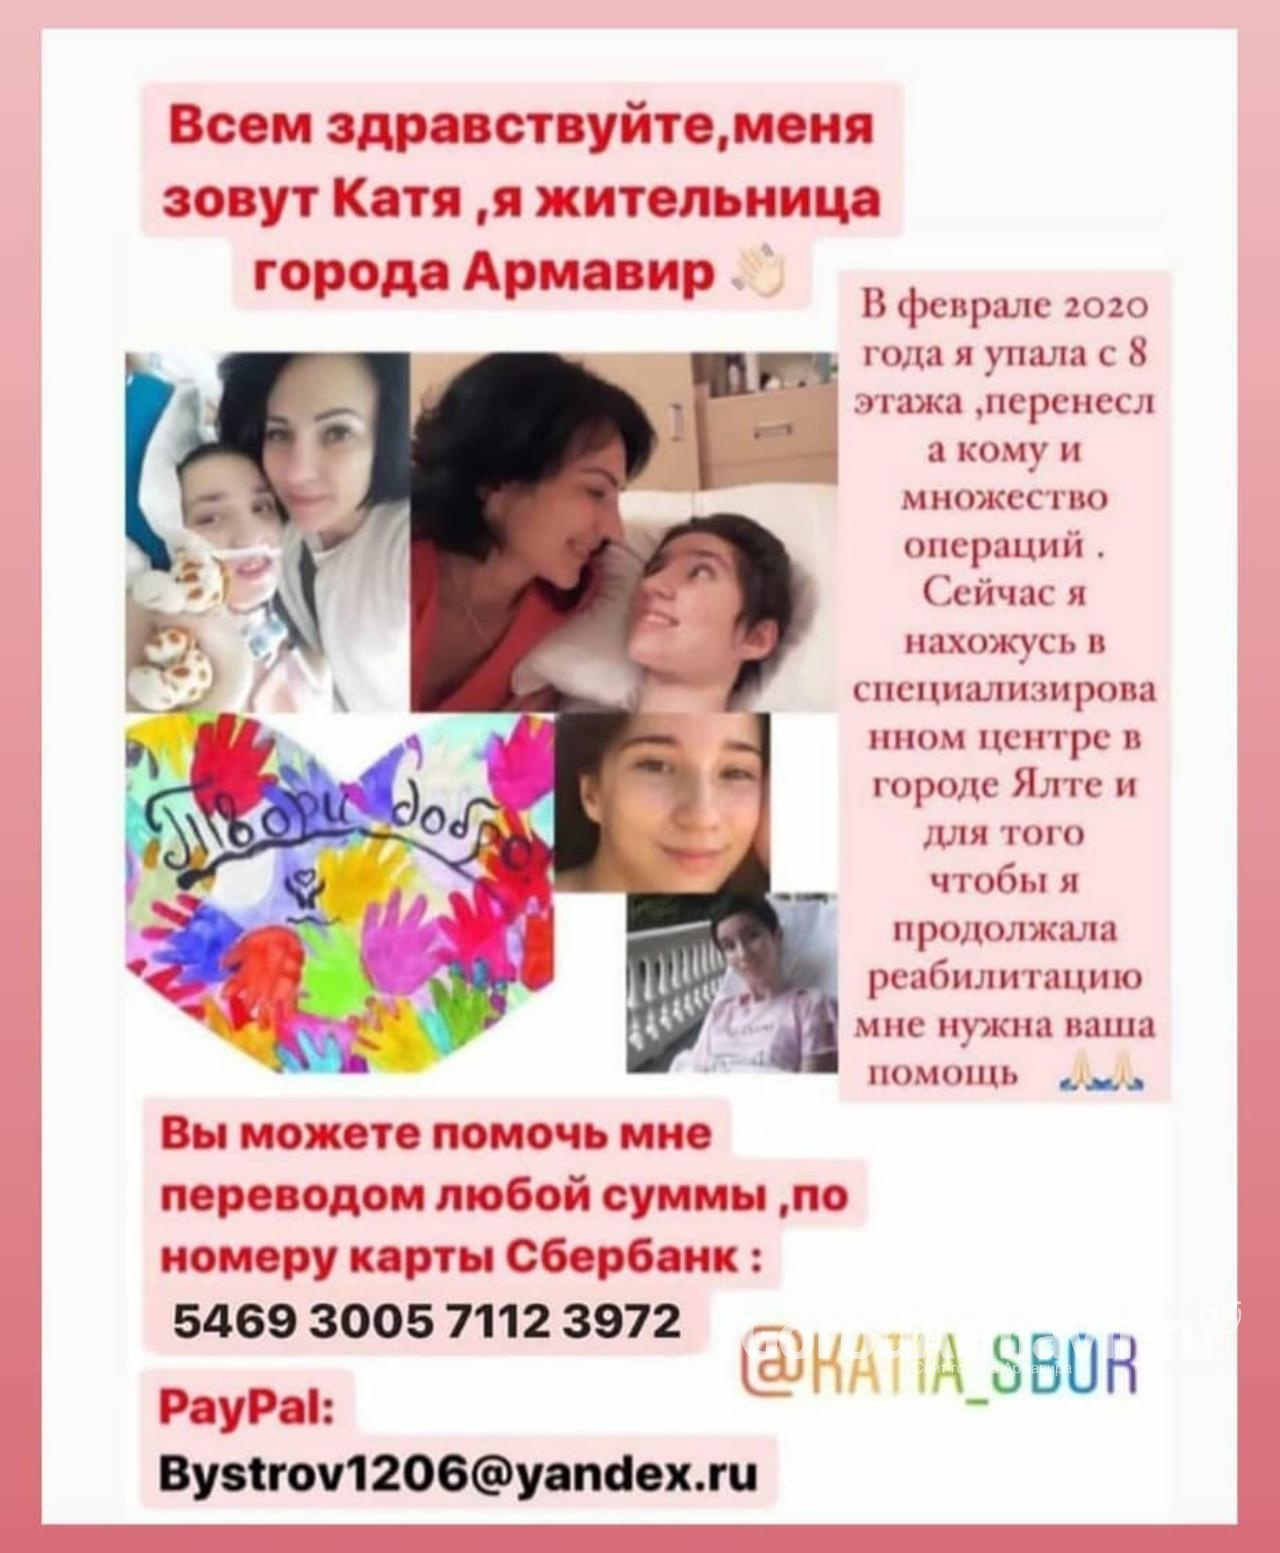 Упавшей с 8 этажа 13-летней девочке из Армавира необходимо полмиллиона рублей на реабилитацию 